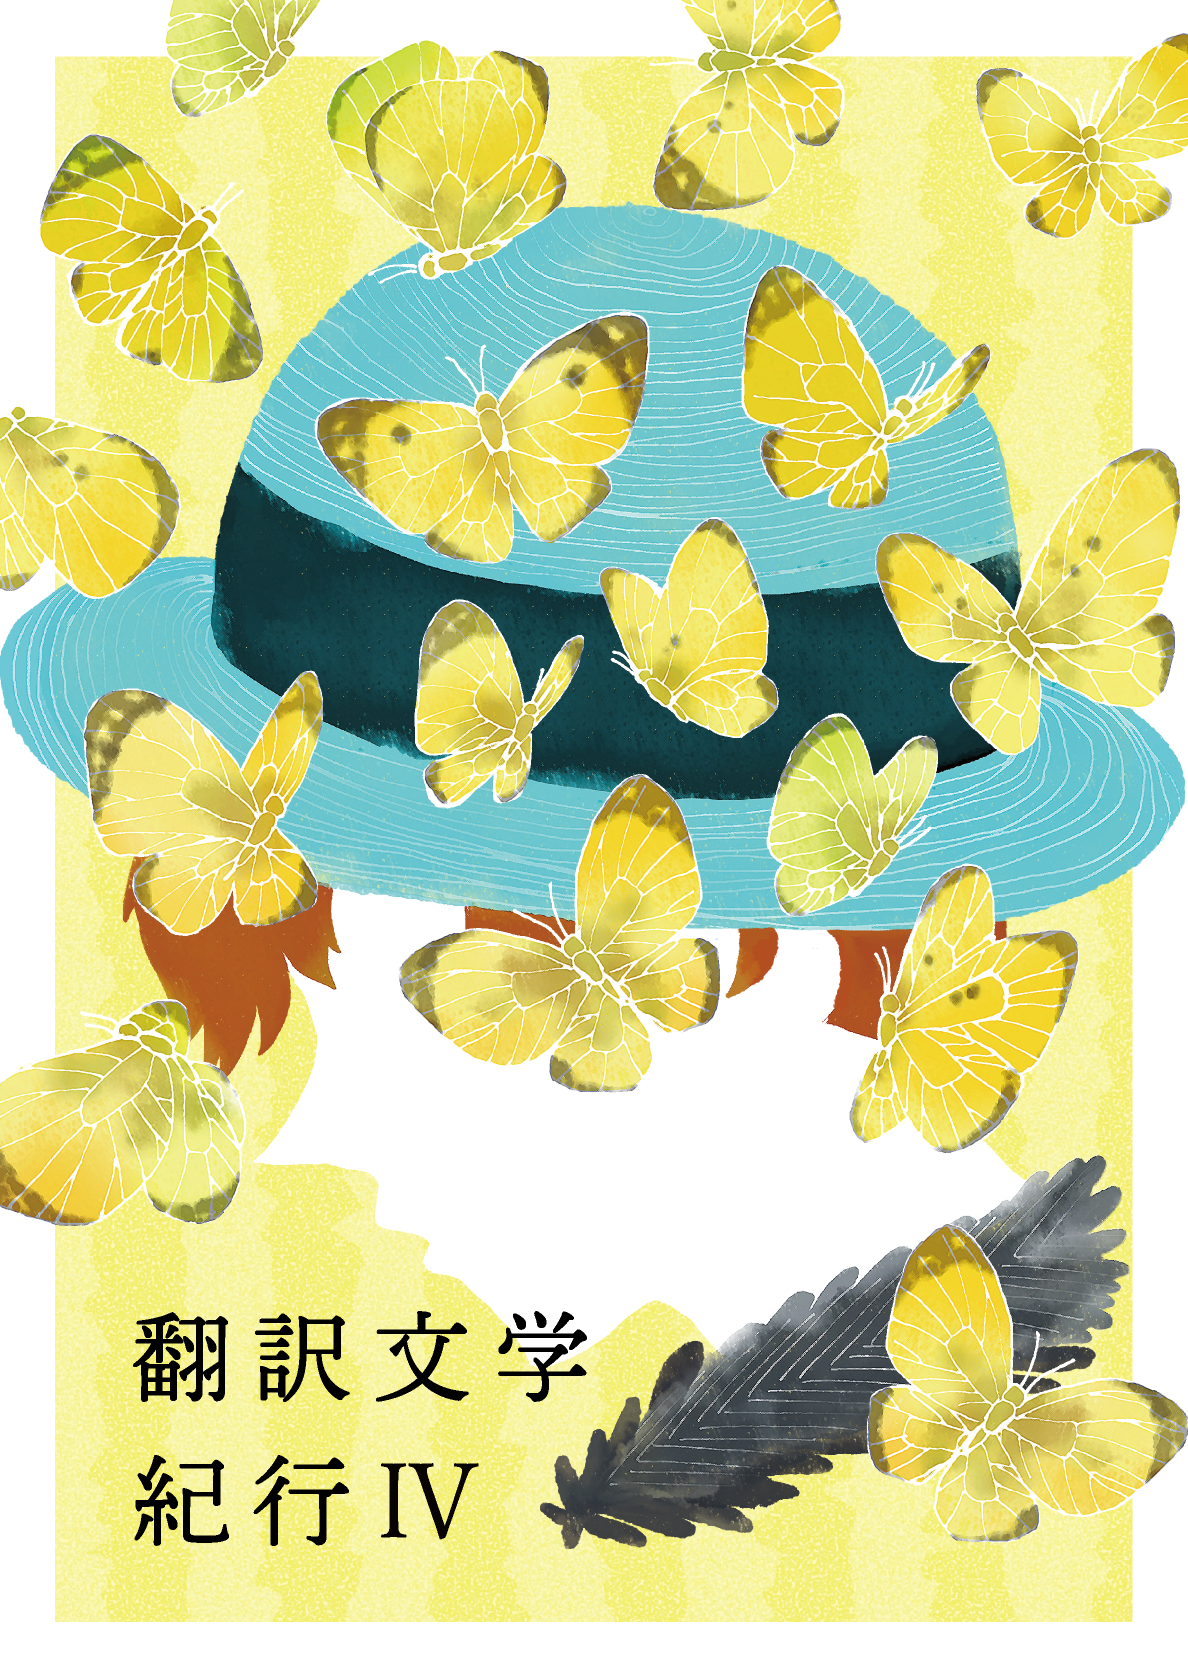 翻訳文学紀行IVの表紙。黄色い蝶の群れが描かれている。